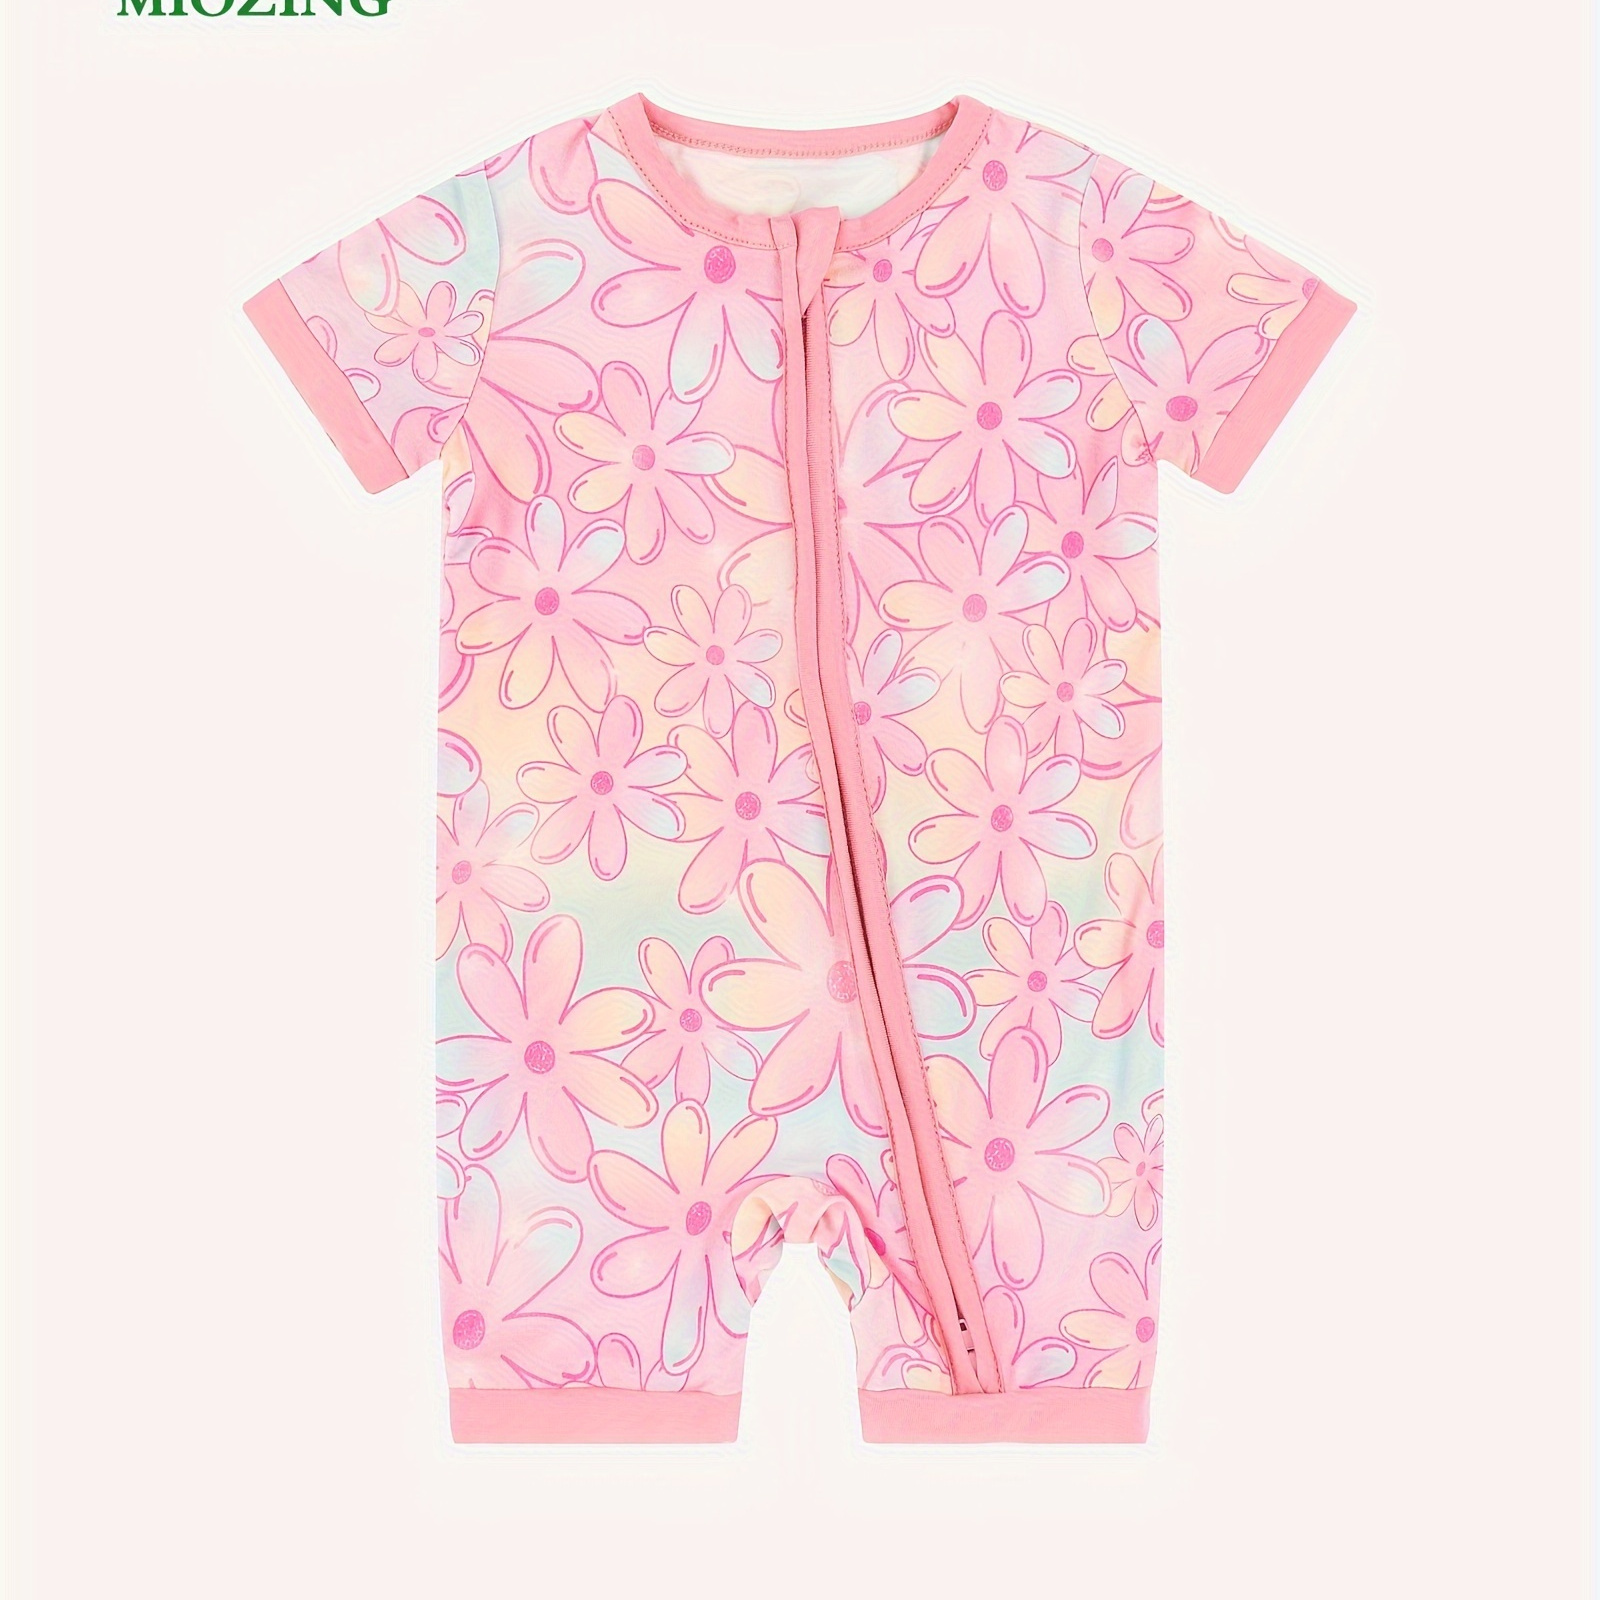 

Miozing Bamboo Fiber Bodysuit For Infants, Tie-dye Flower Pattern Short Sleeve Onesie, Baby Girl's Romper